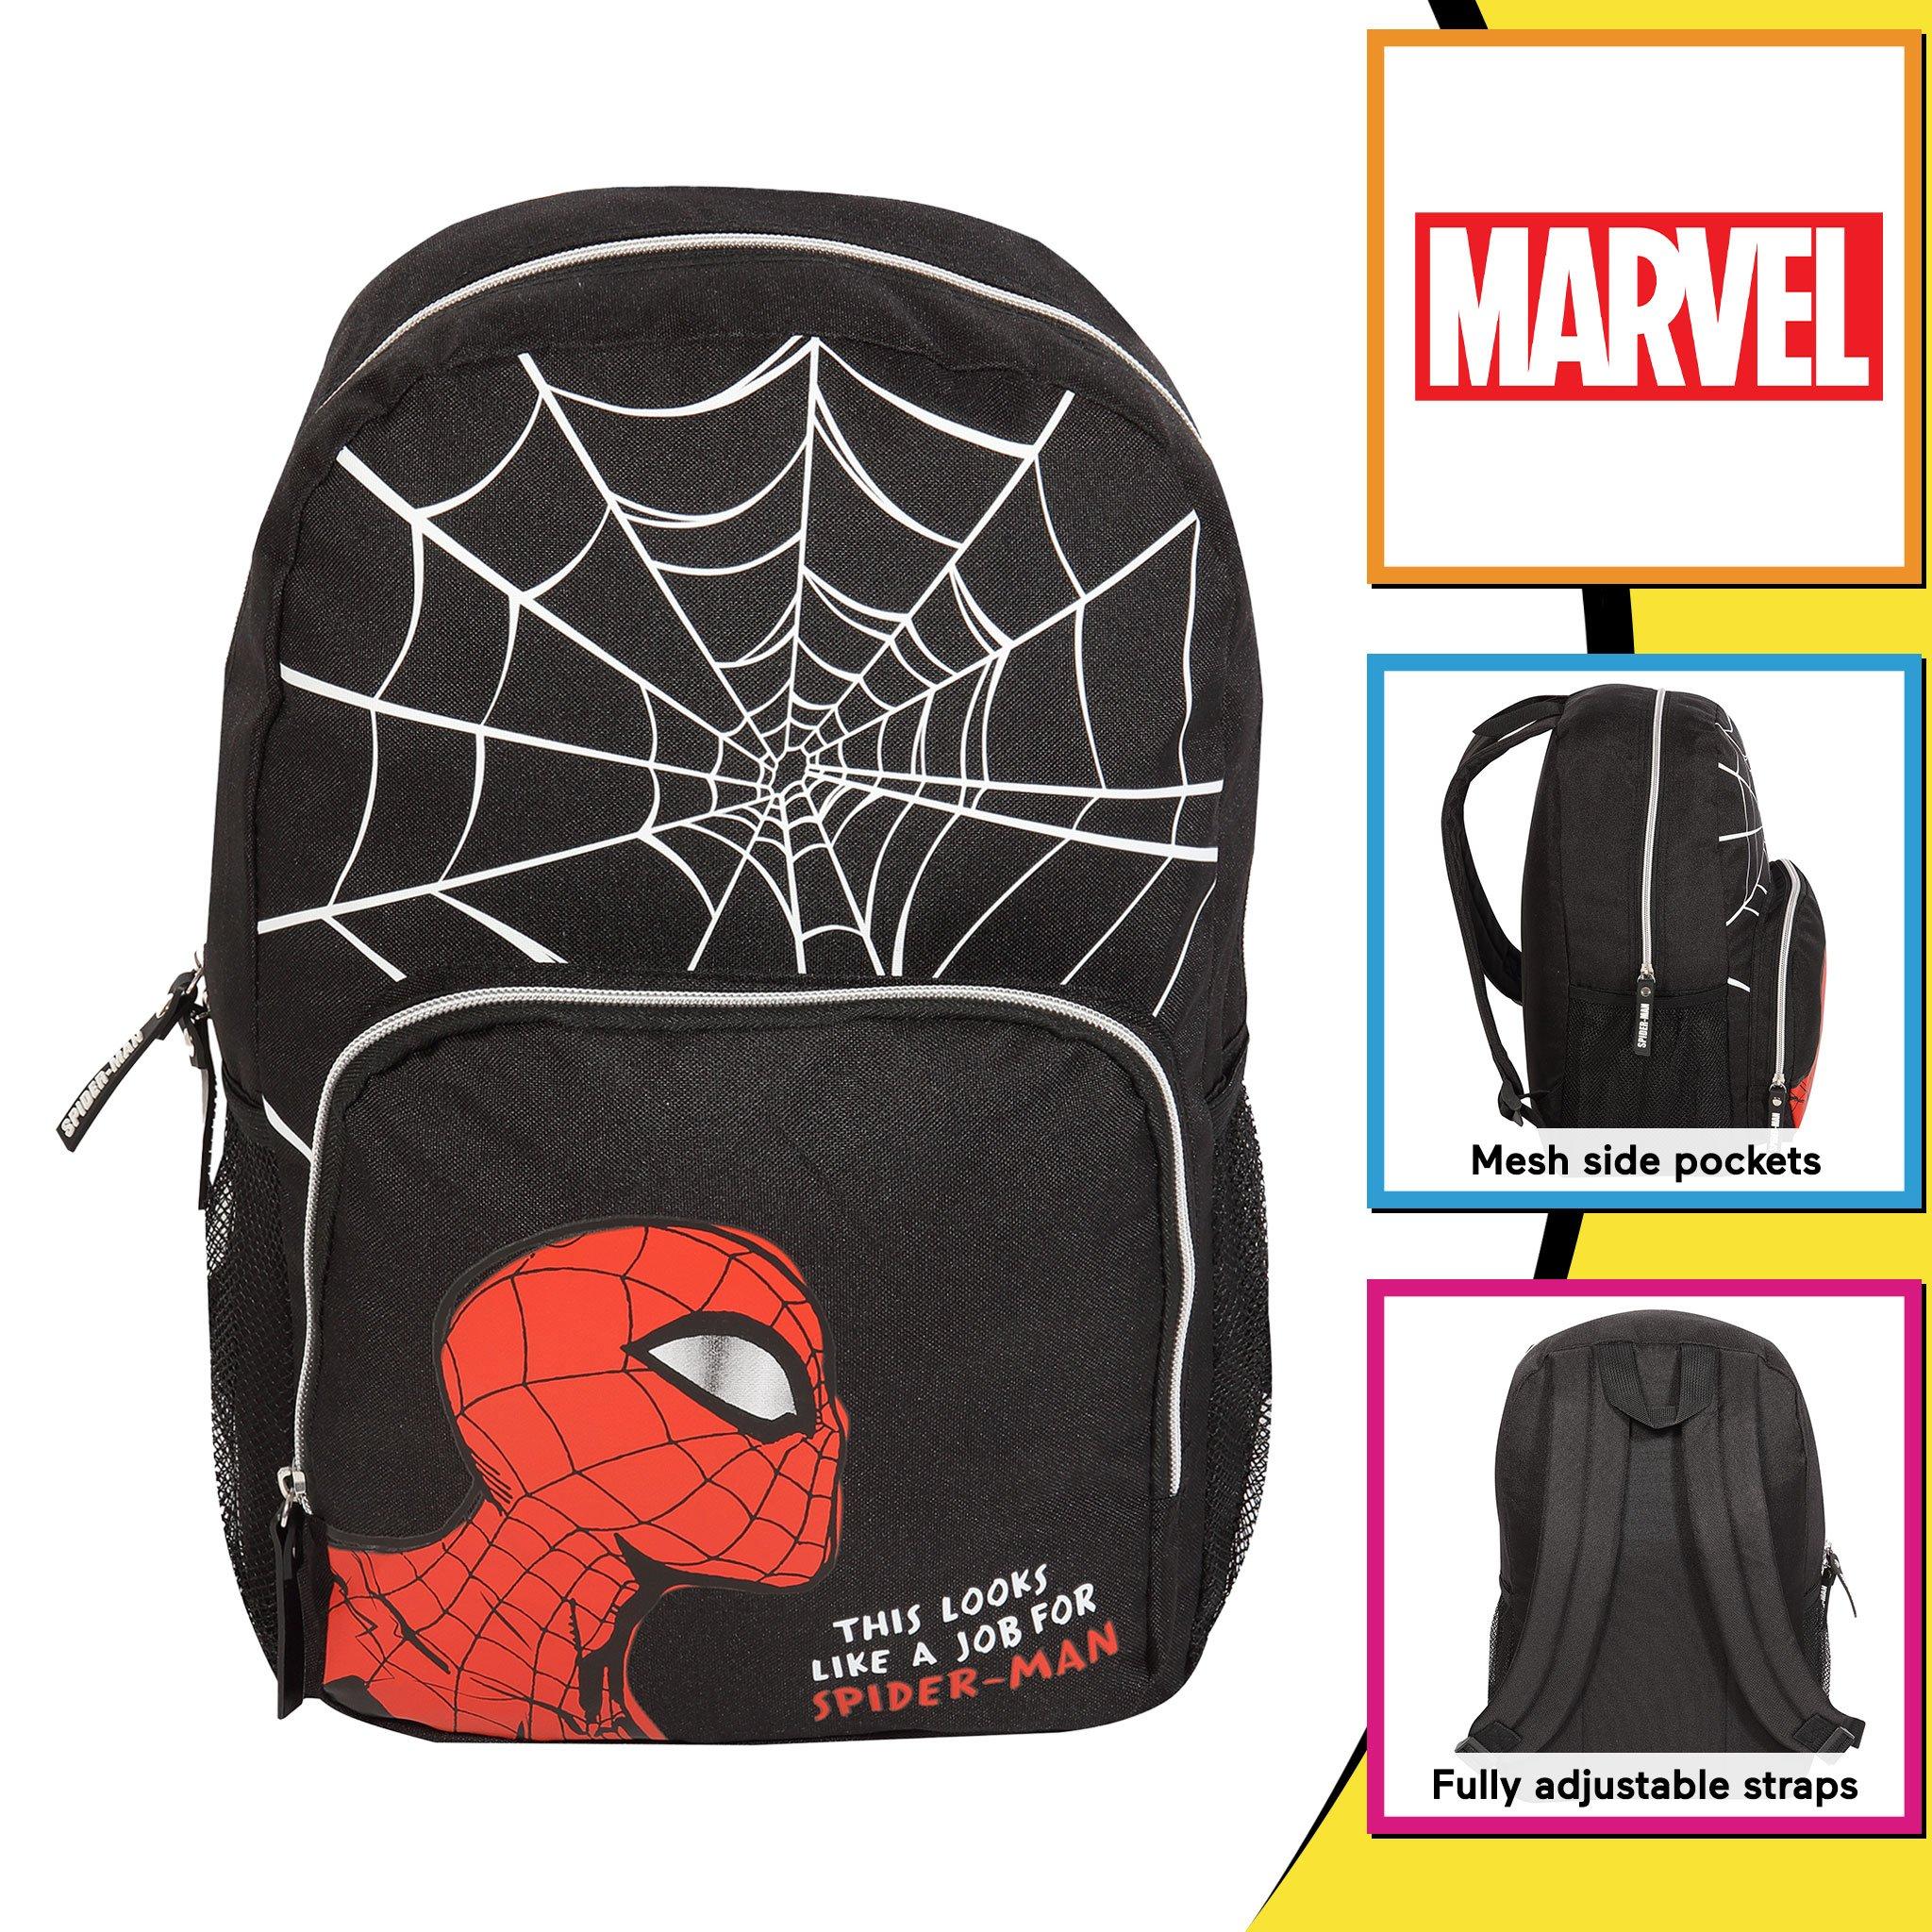 Рюкзак с веб-головой Comics Spiderman Marvel, черный lego marvel набор моделей супергероев в маске человека паука для взрослых